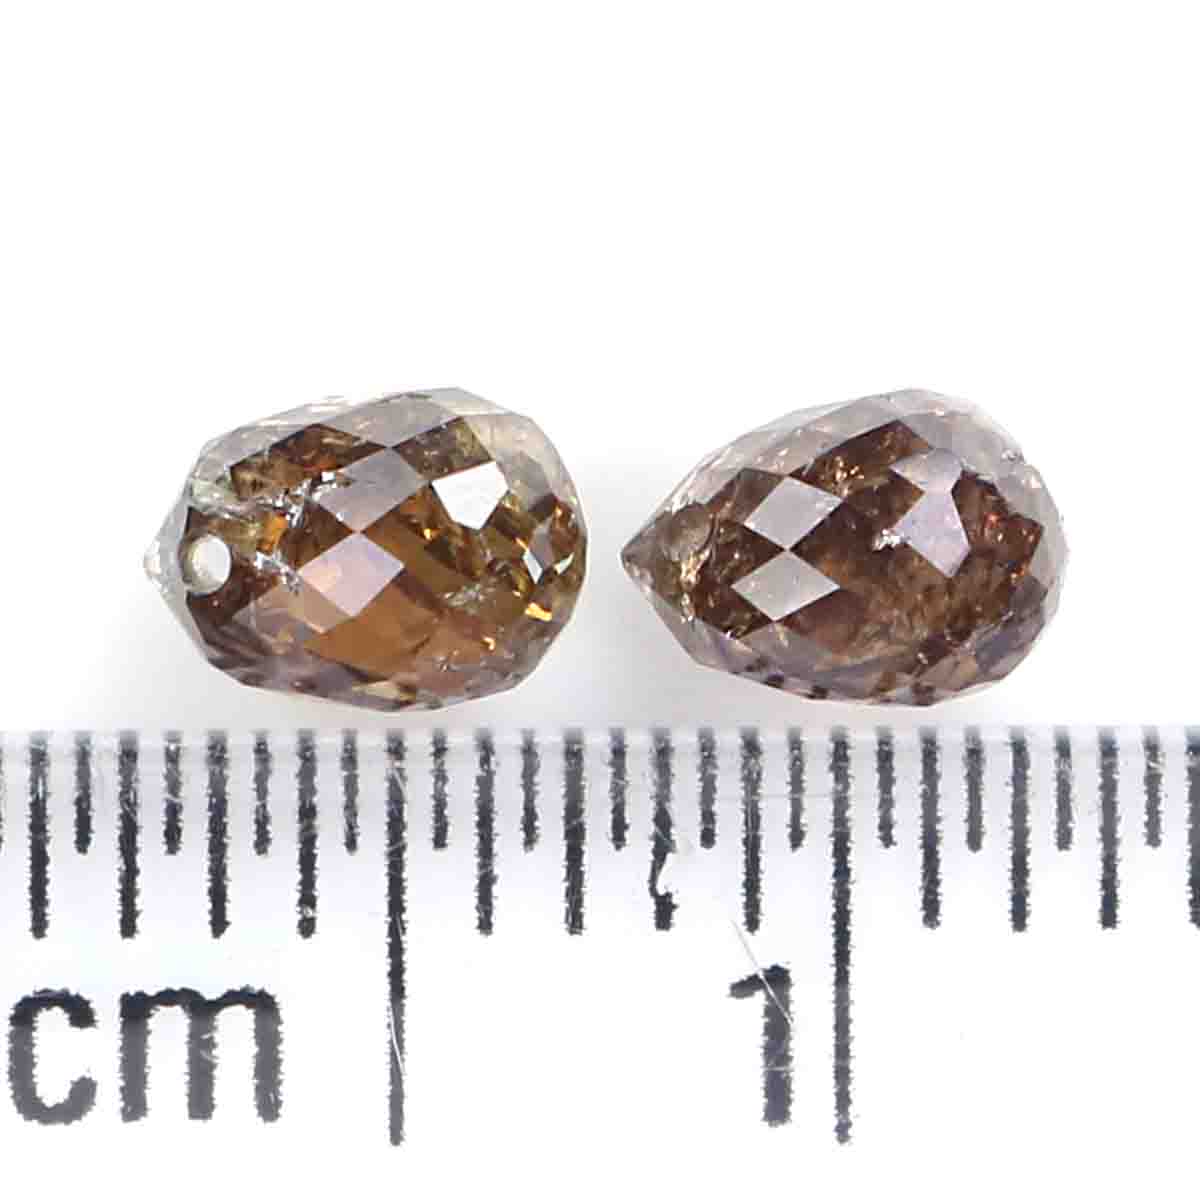 1.07 Ct Natural Loose Briolette Shape Diamond Brown Color Drop Diamond 4.90 MM Natural Loose Diamond Brown Briolette Cut Diamond LQ9993